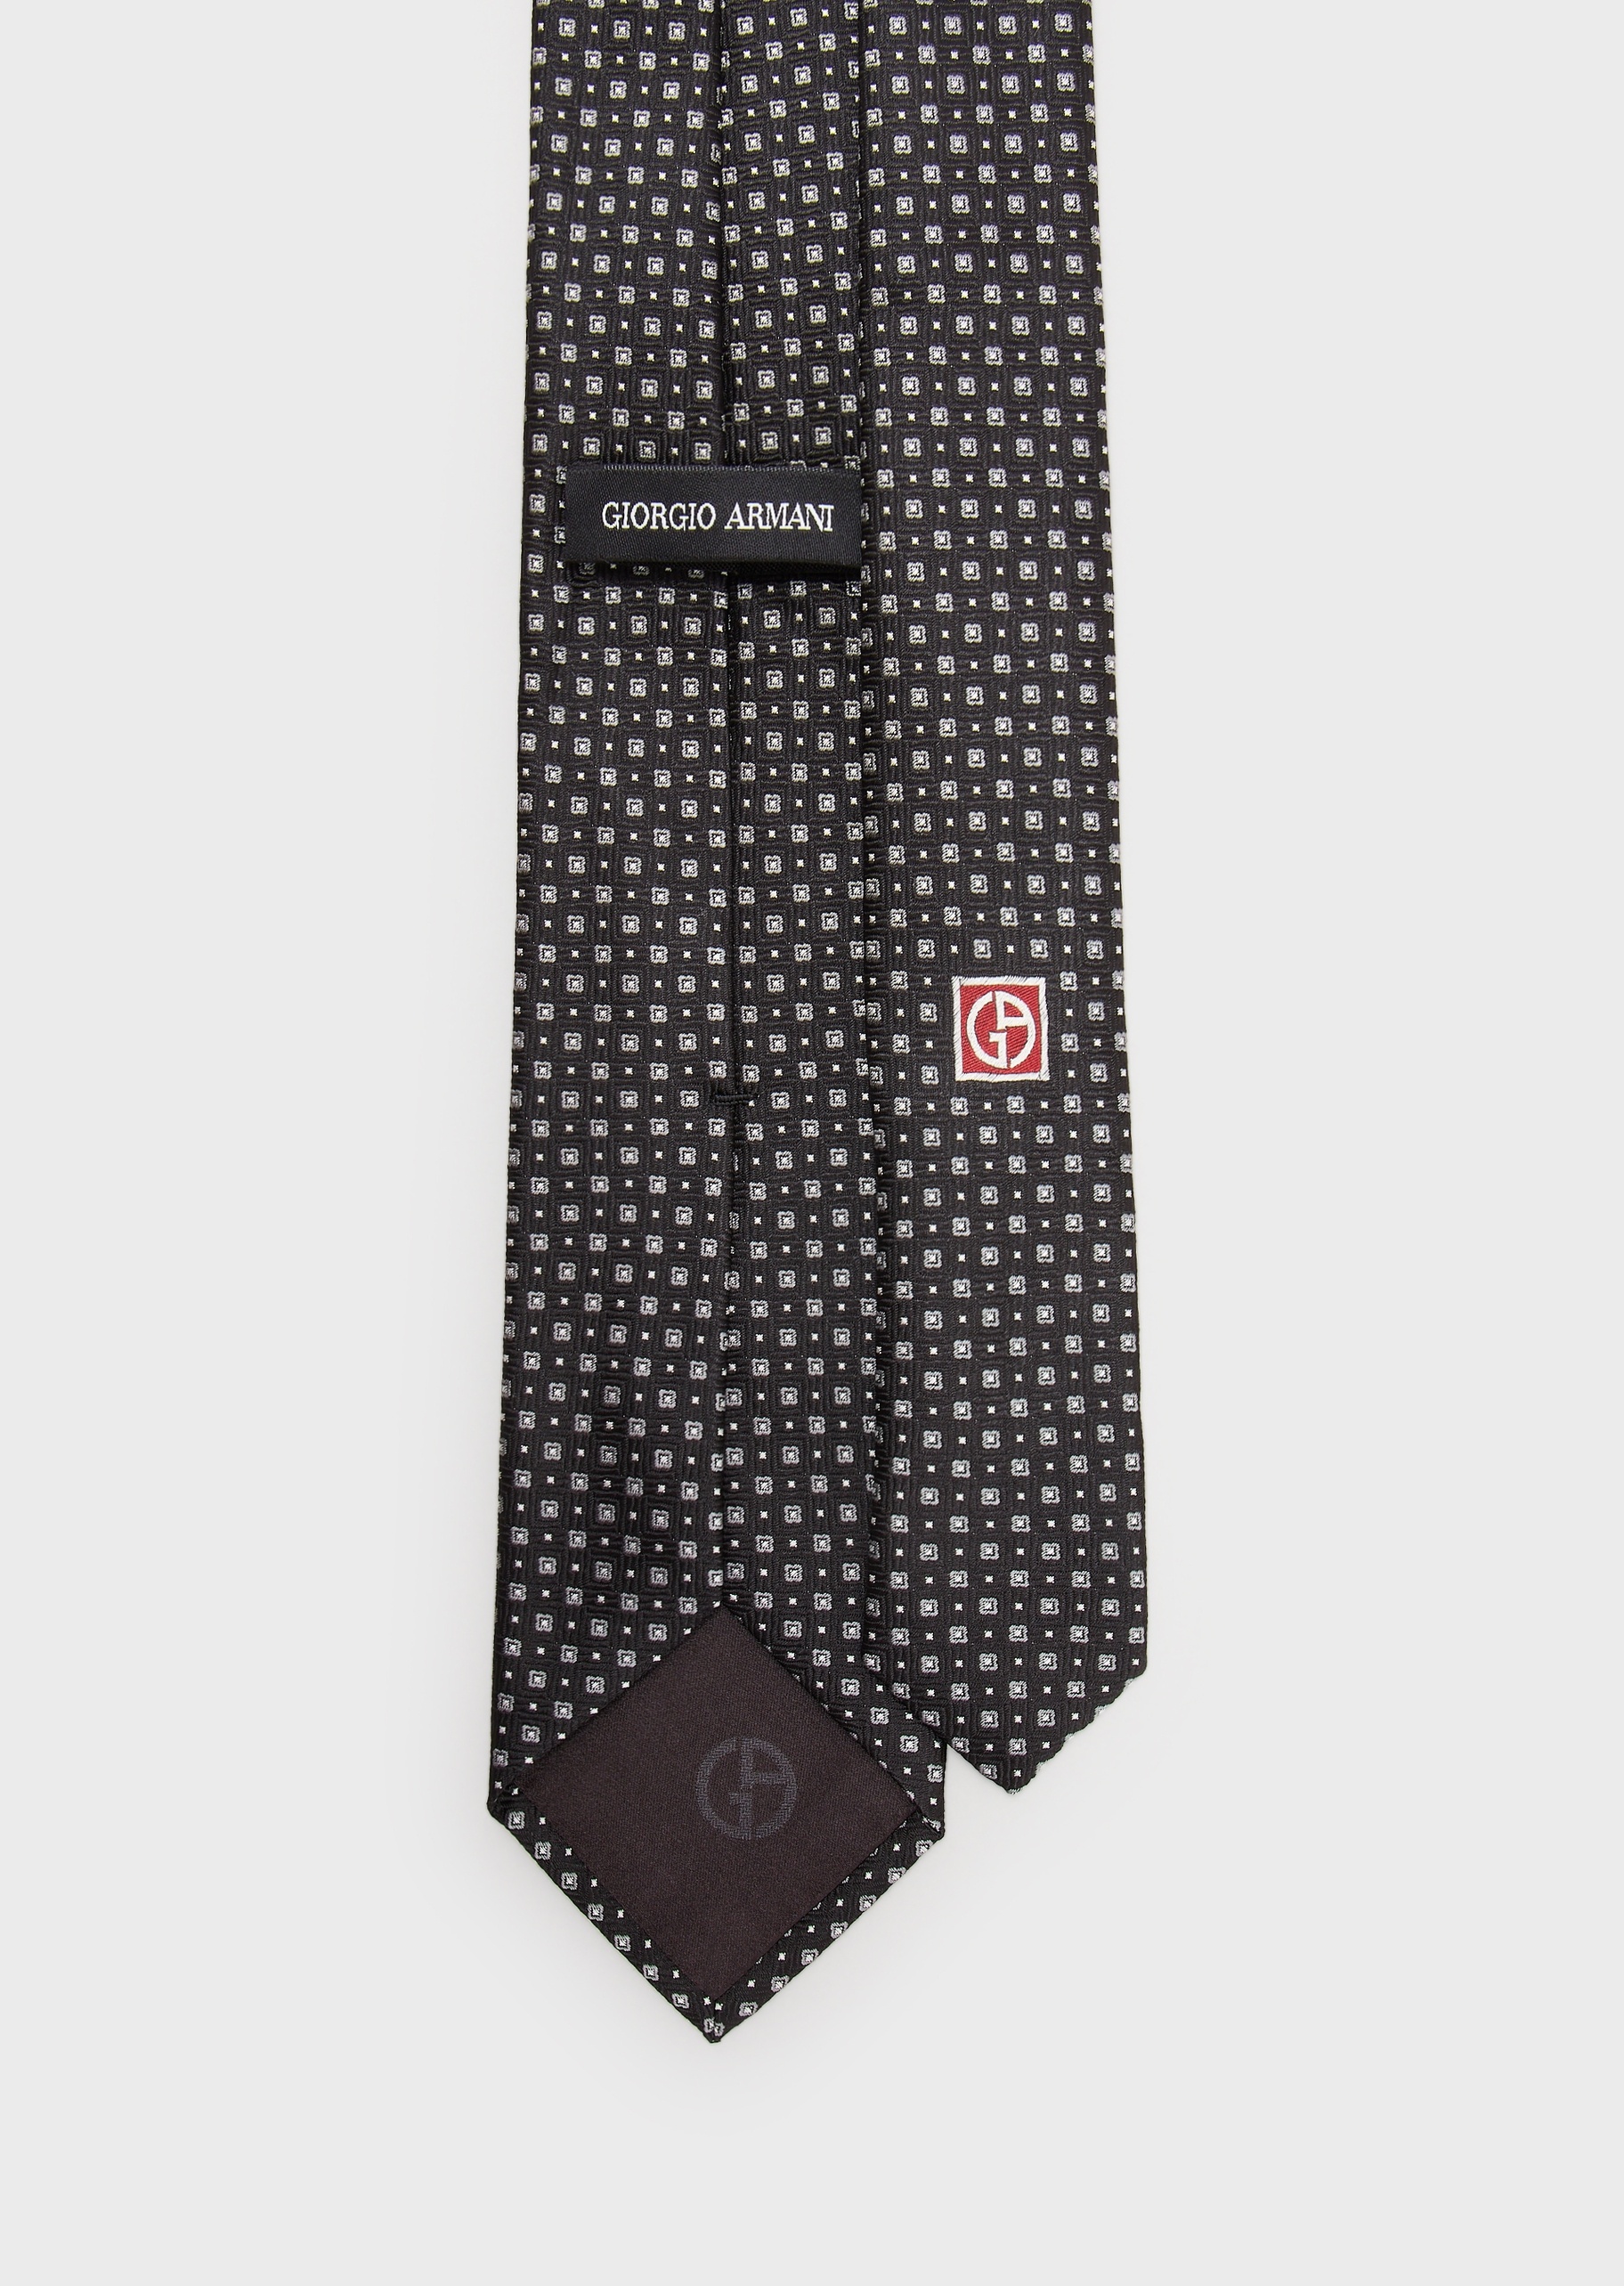 Giorgio Armani 通体方形提花真丝领带